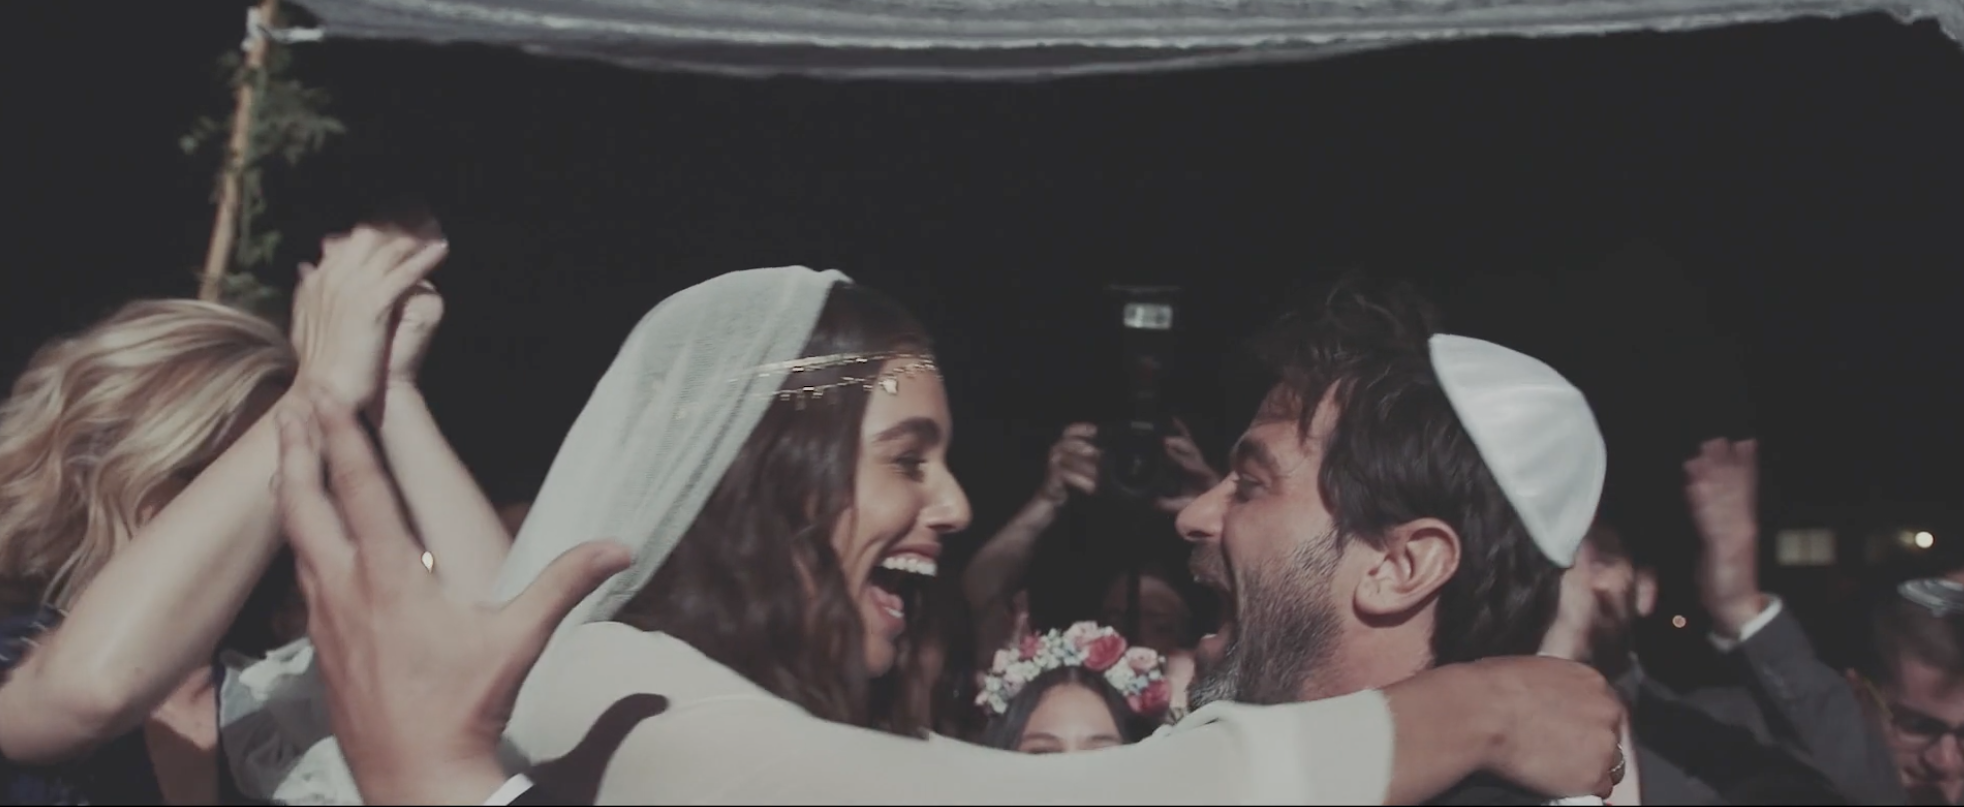 צילום ווידיאו צלמת וידיאו עריכת וידיאו חתונה חתונות